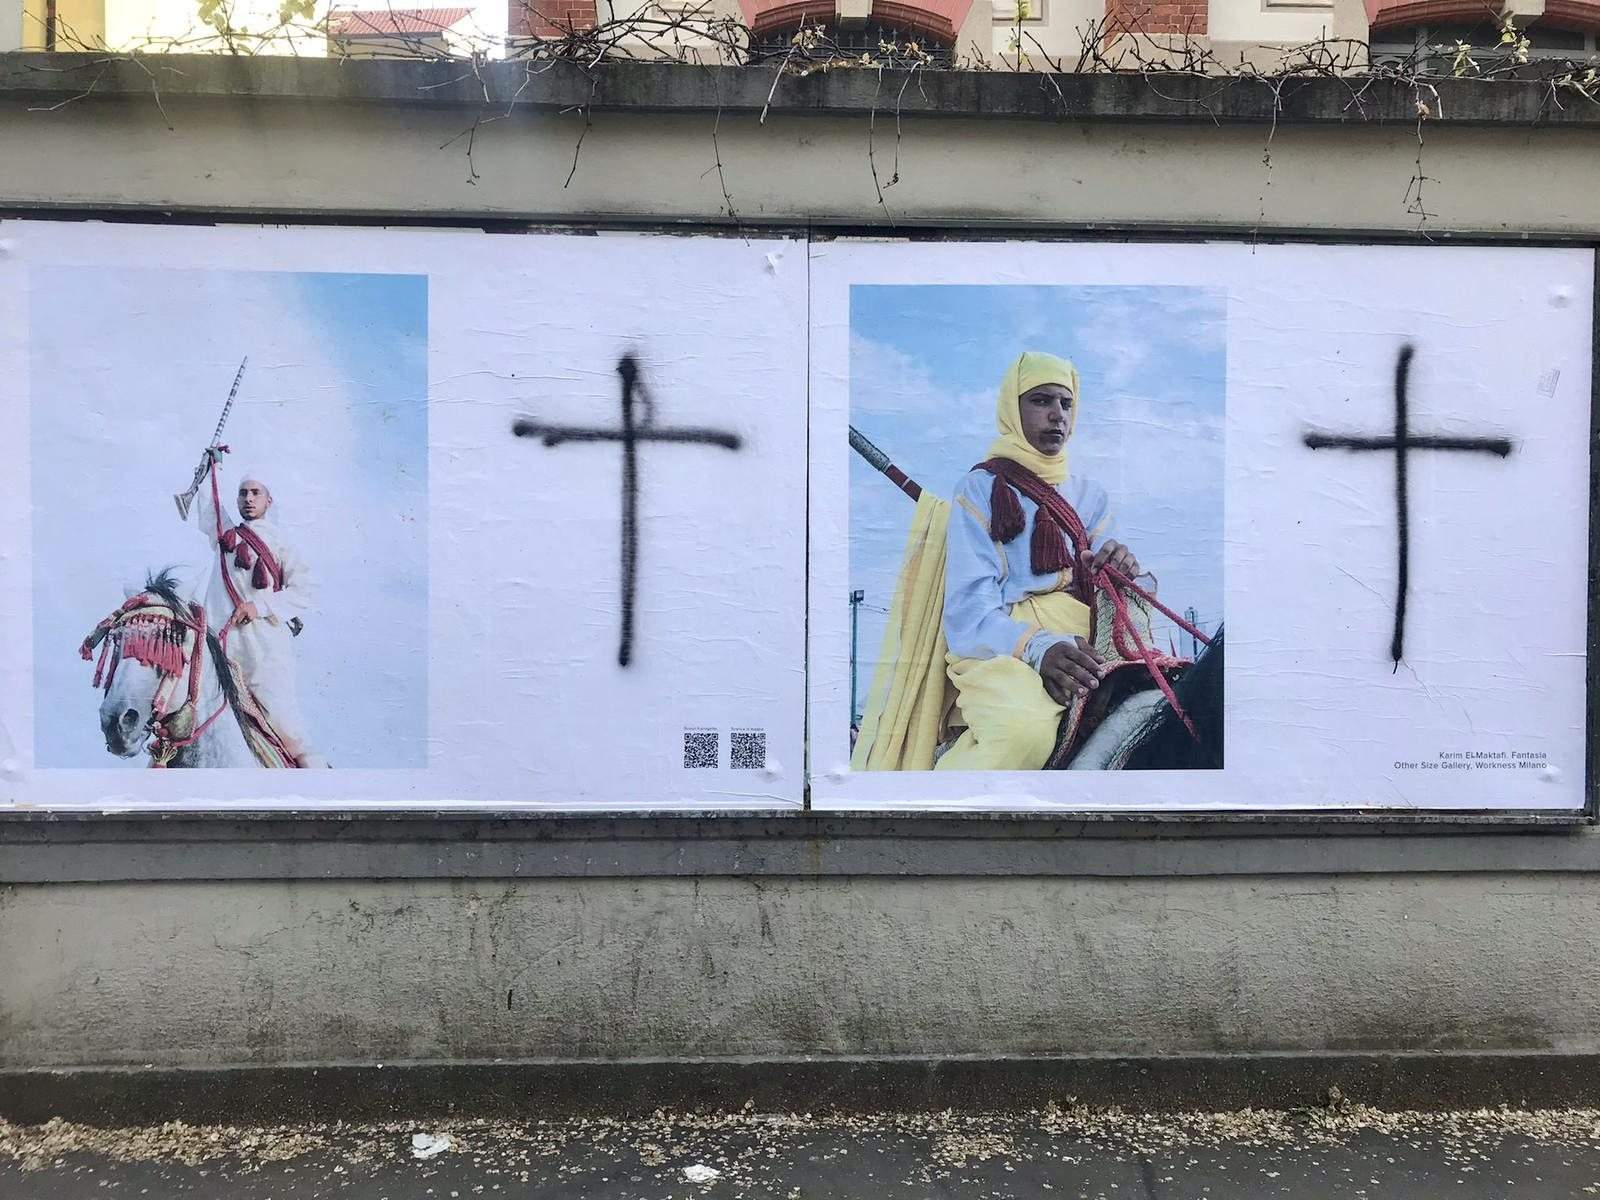 À Milan, des personnes intolérantes vandalisent les œuvres de l'artiste Karim El Maktafi. Et il réagit par l'art